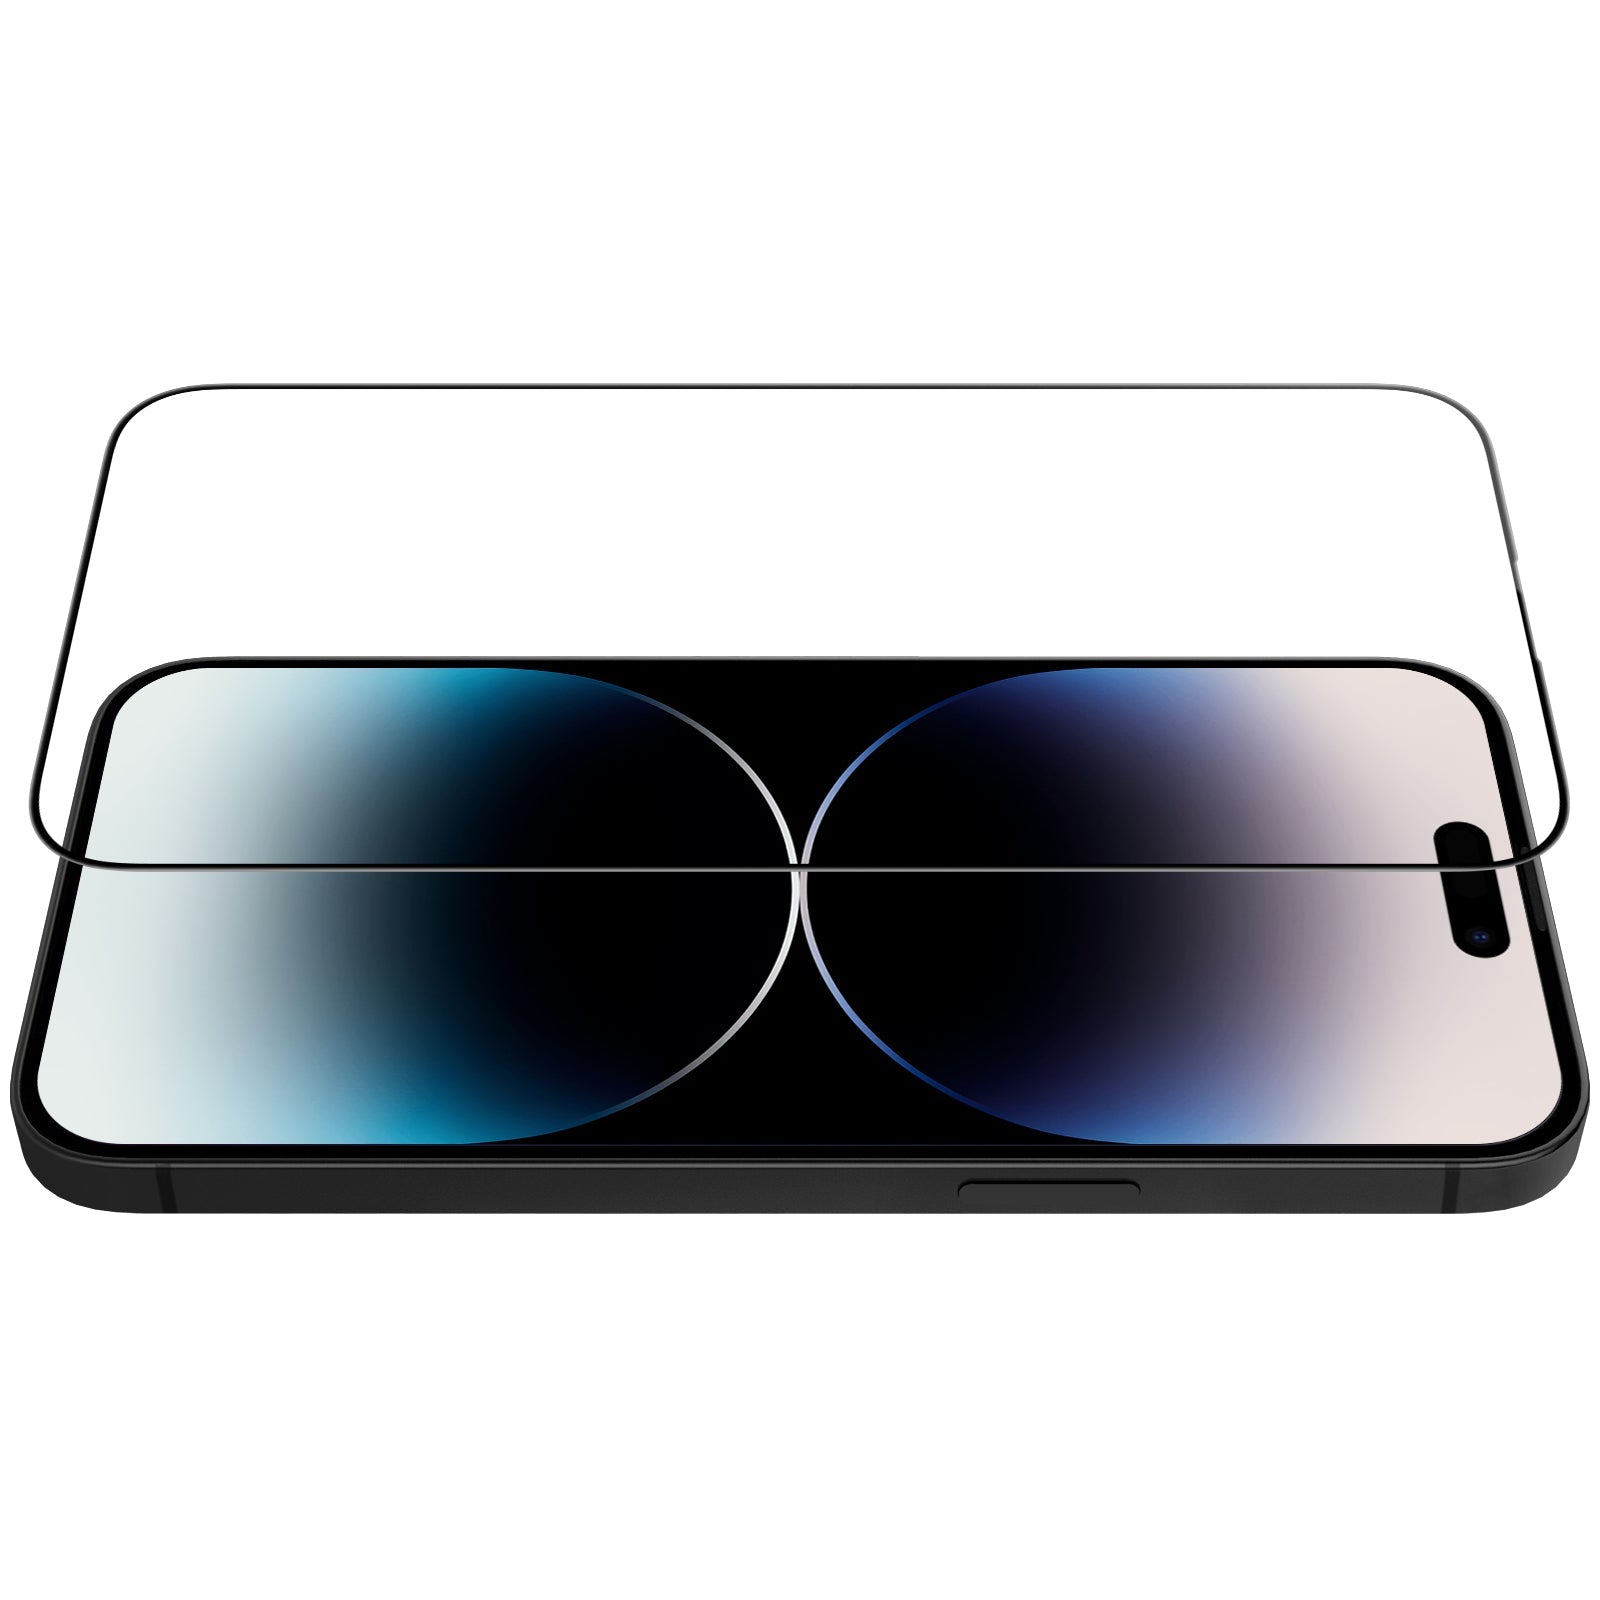 Proteggi schermo in vetro completamente coprente per la serie iPhone 14